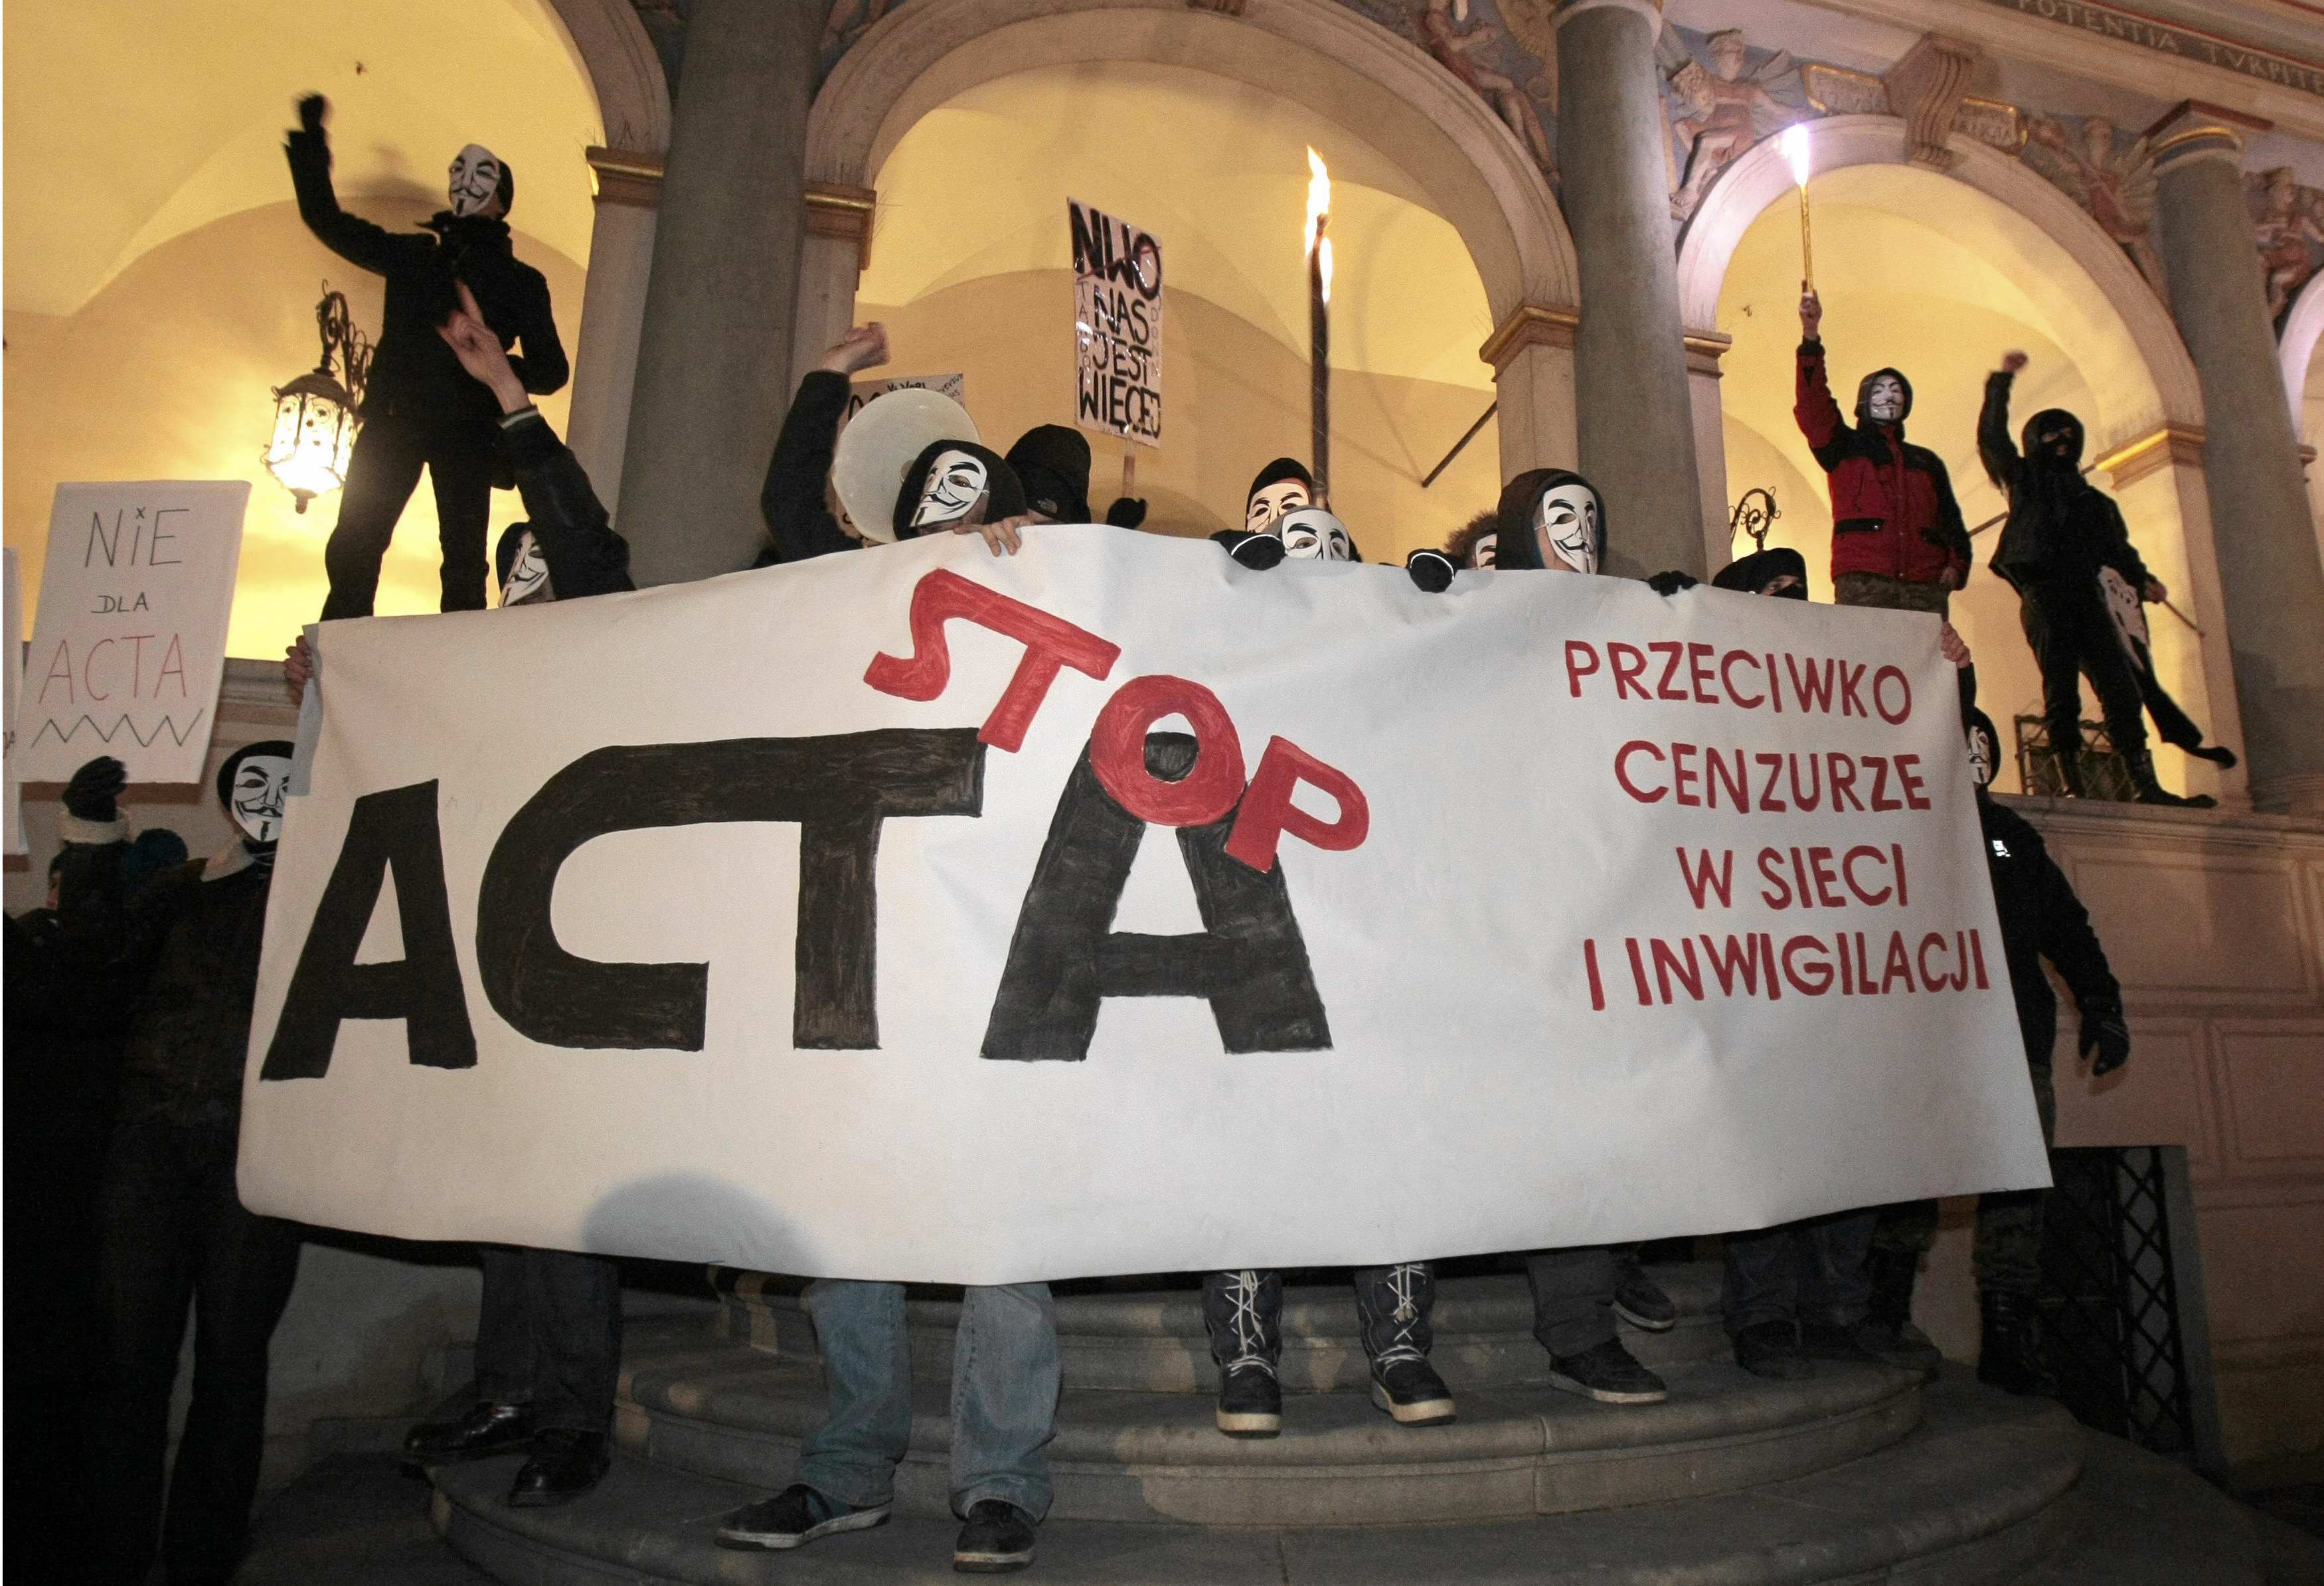 Η Ελλάδα υπέγραψε την συνθήκη ACTΑ για την πνευματική ιδιοκτησία